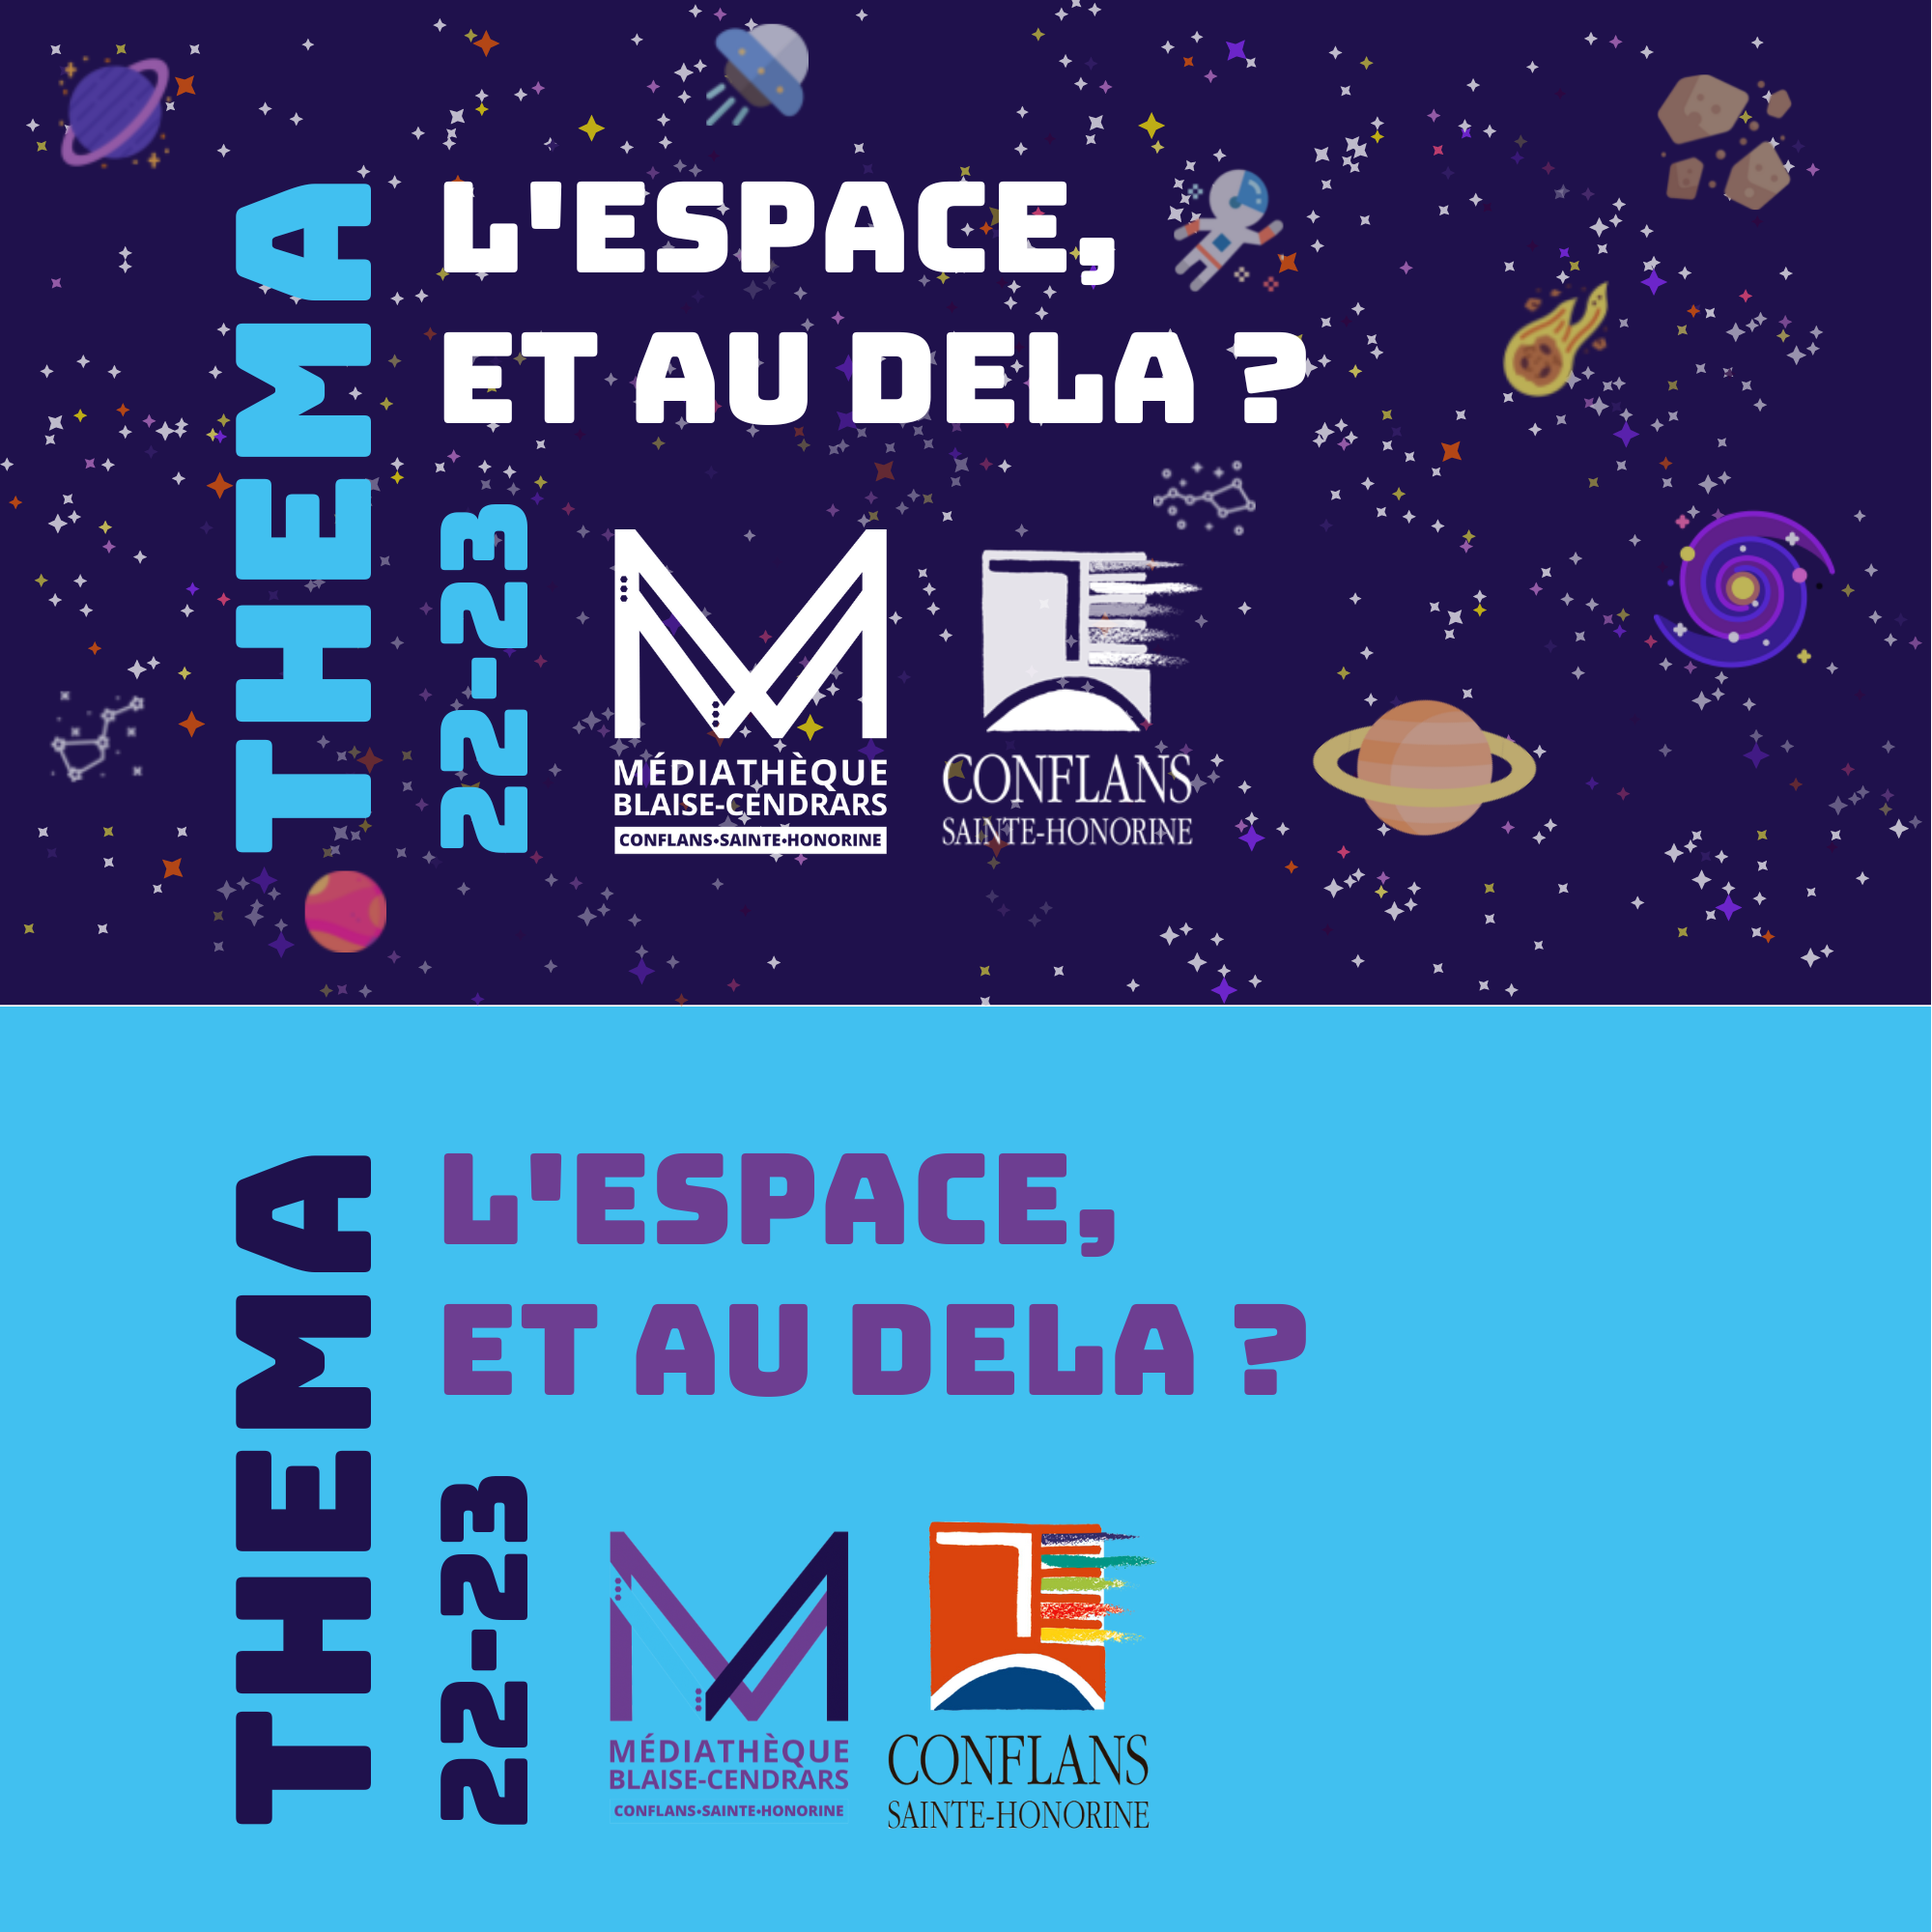 Théma 2022-2023 : explorez l’espace grâce à la Médiathèque